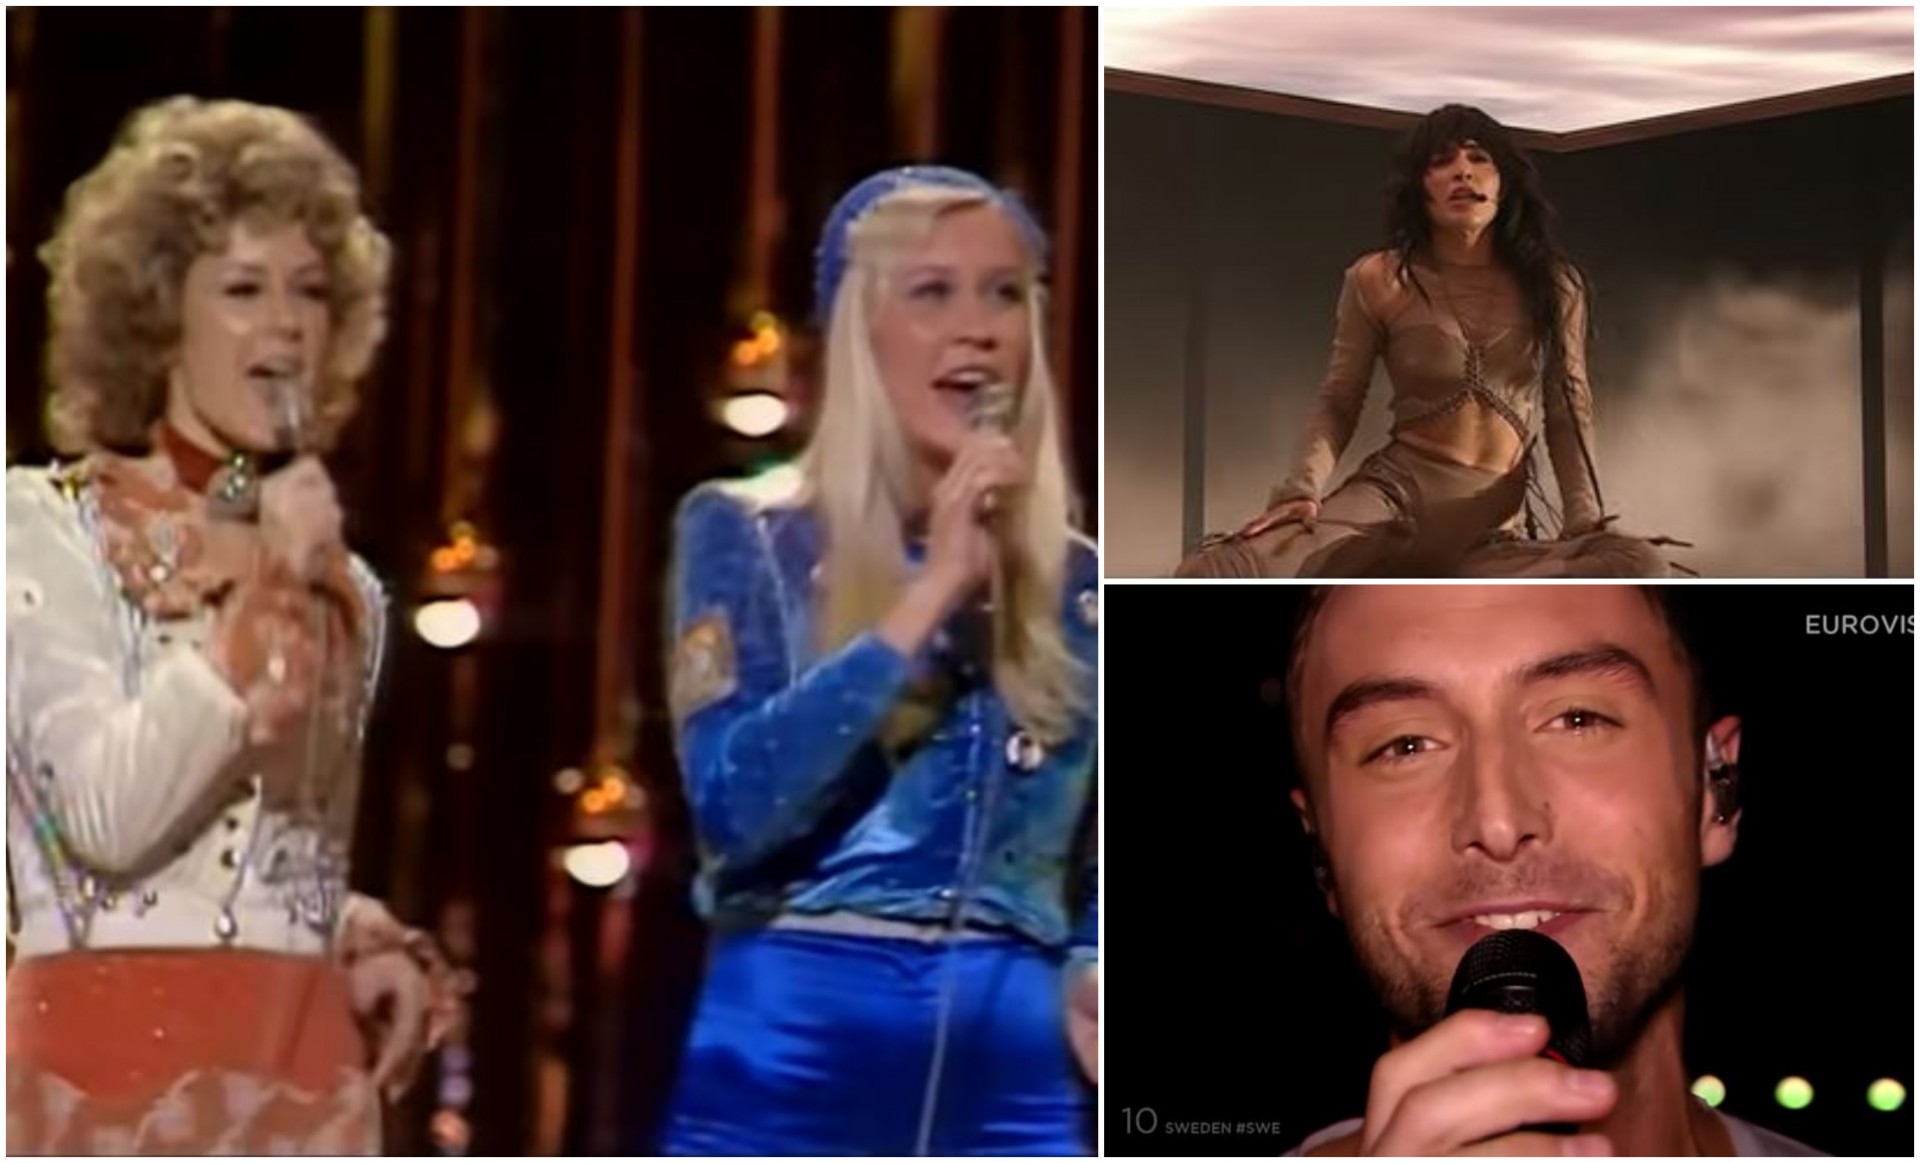 Музички времеплов: Лорин по 7-ми пат го однесе пехарот, но кои изведувачи од Шведска претходно победија на Евровизија?